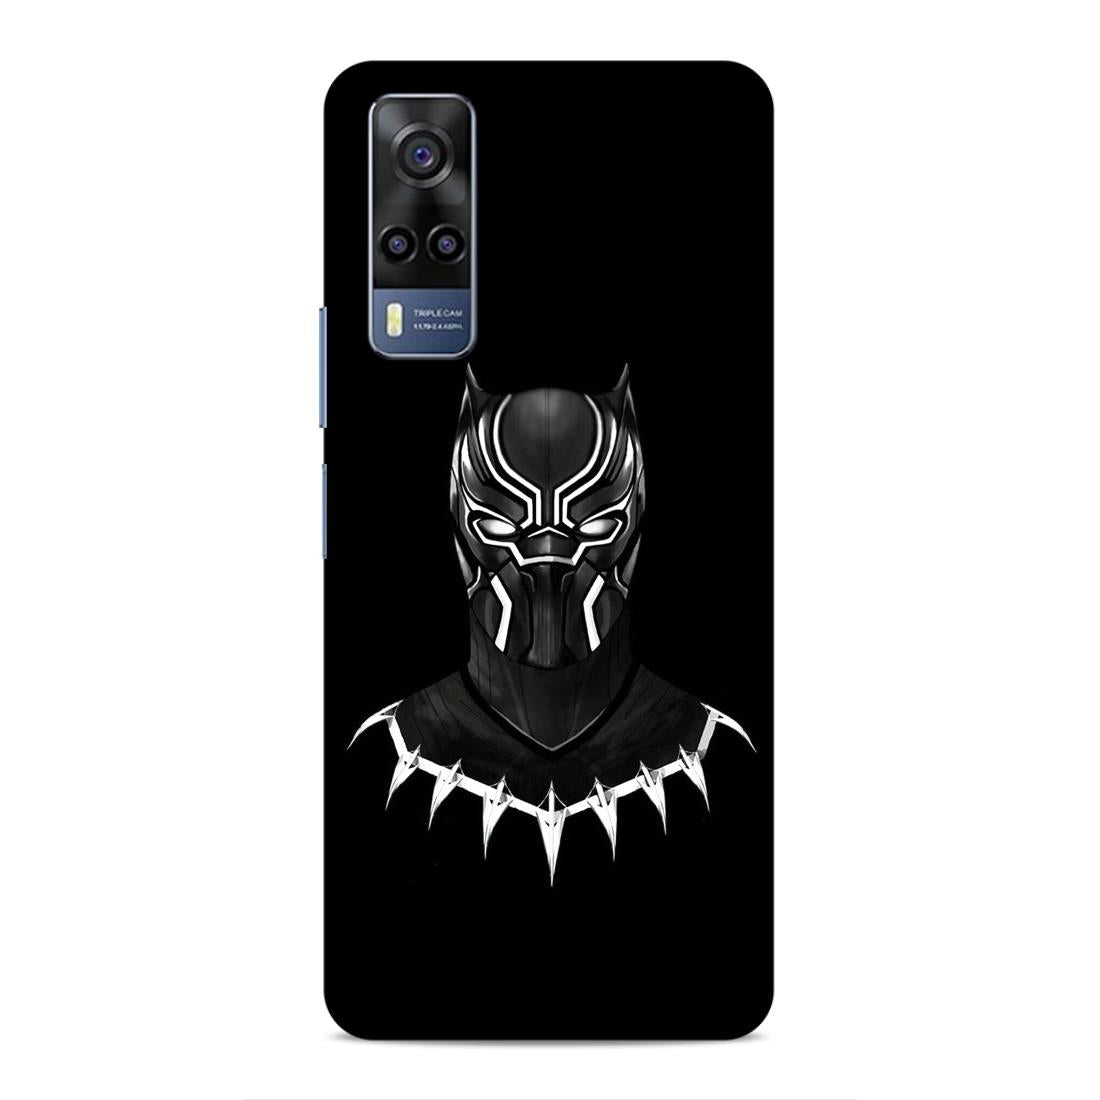 Black Panther Hard Back Case For Vivo iQOO Z3 / Y53s 4G